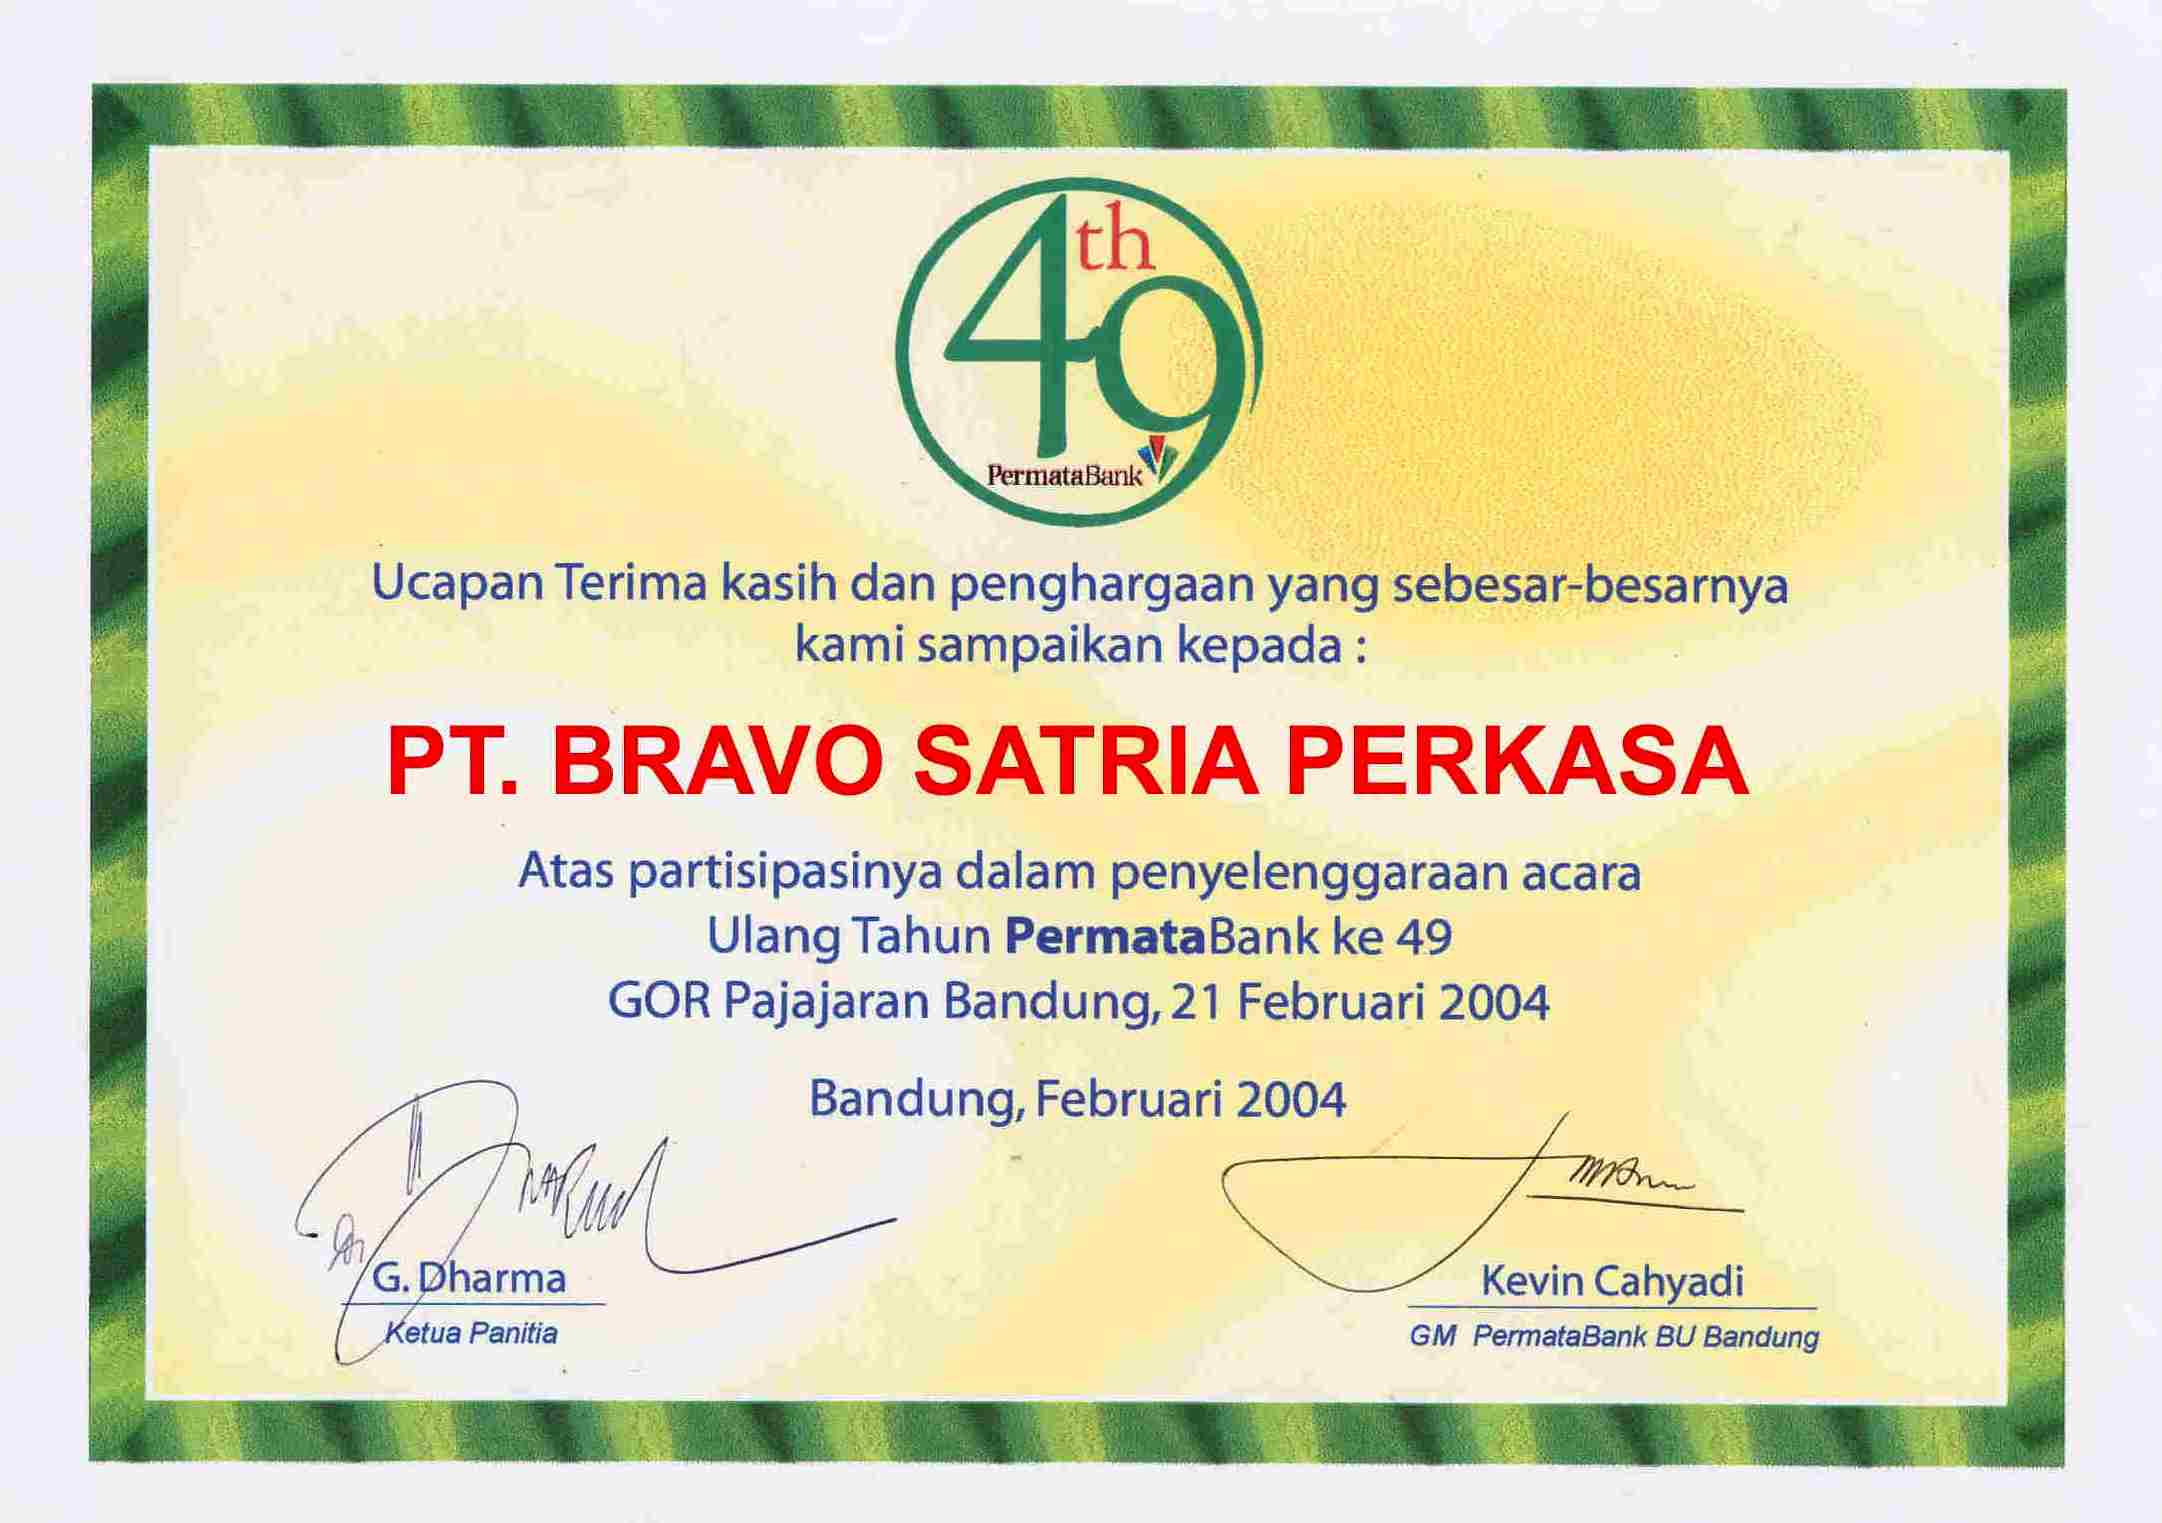 BSP Guard – Bravo Satria Perkasa